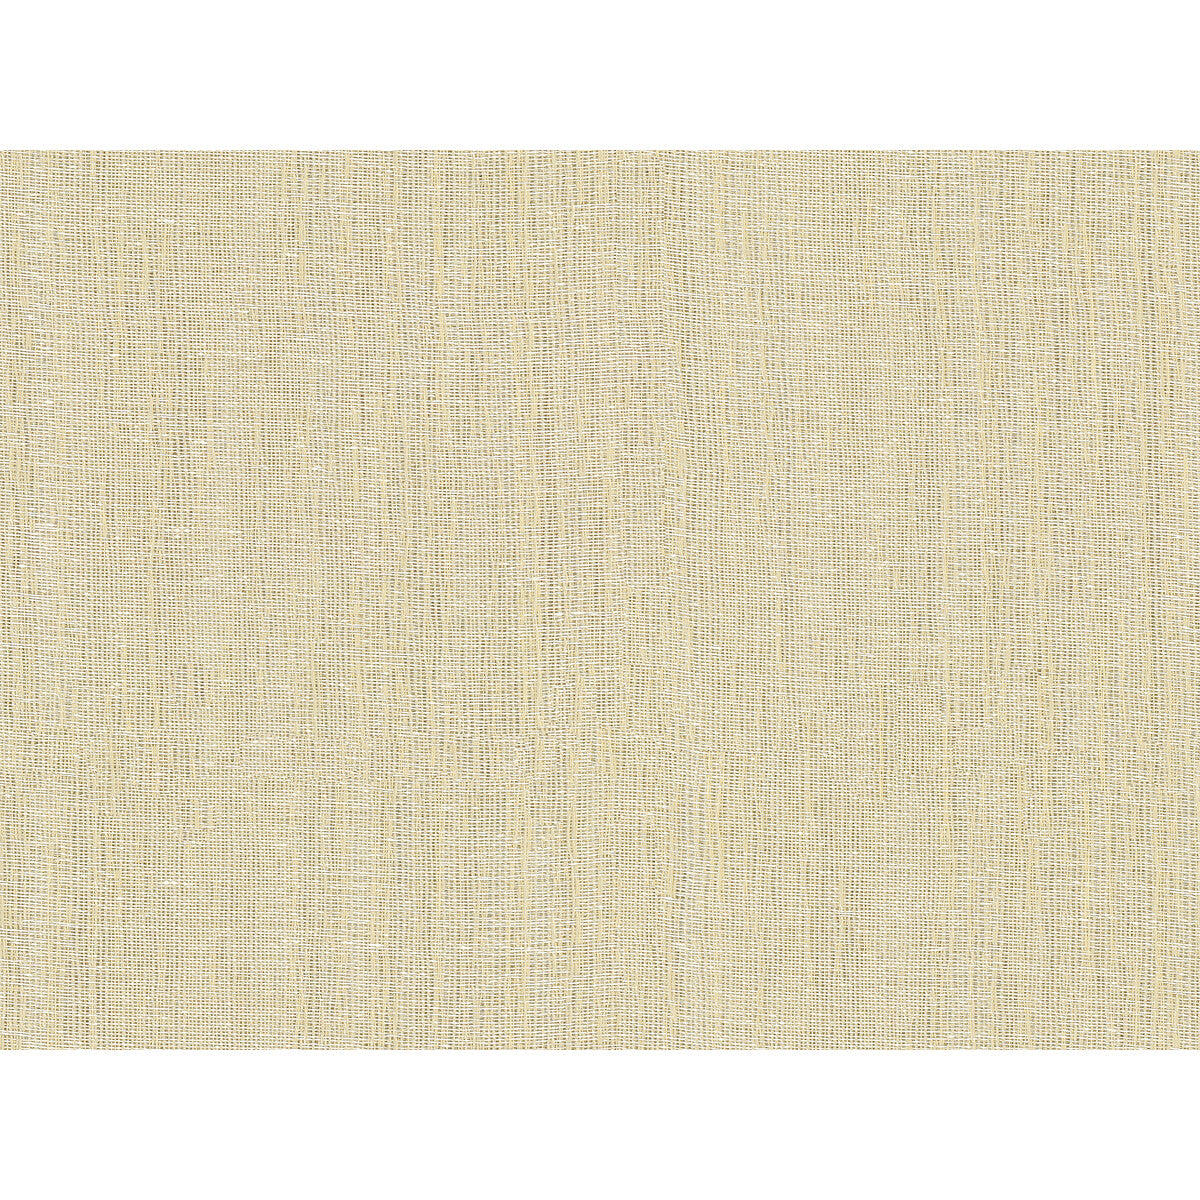 Kravet Basics fabric in 4516-1 color - pattern 4516.1.0 - by Kravet Basics